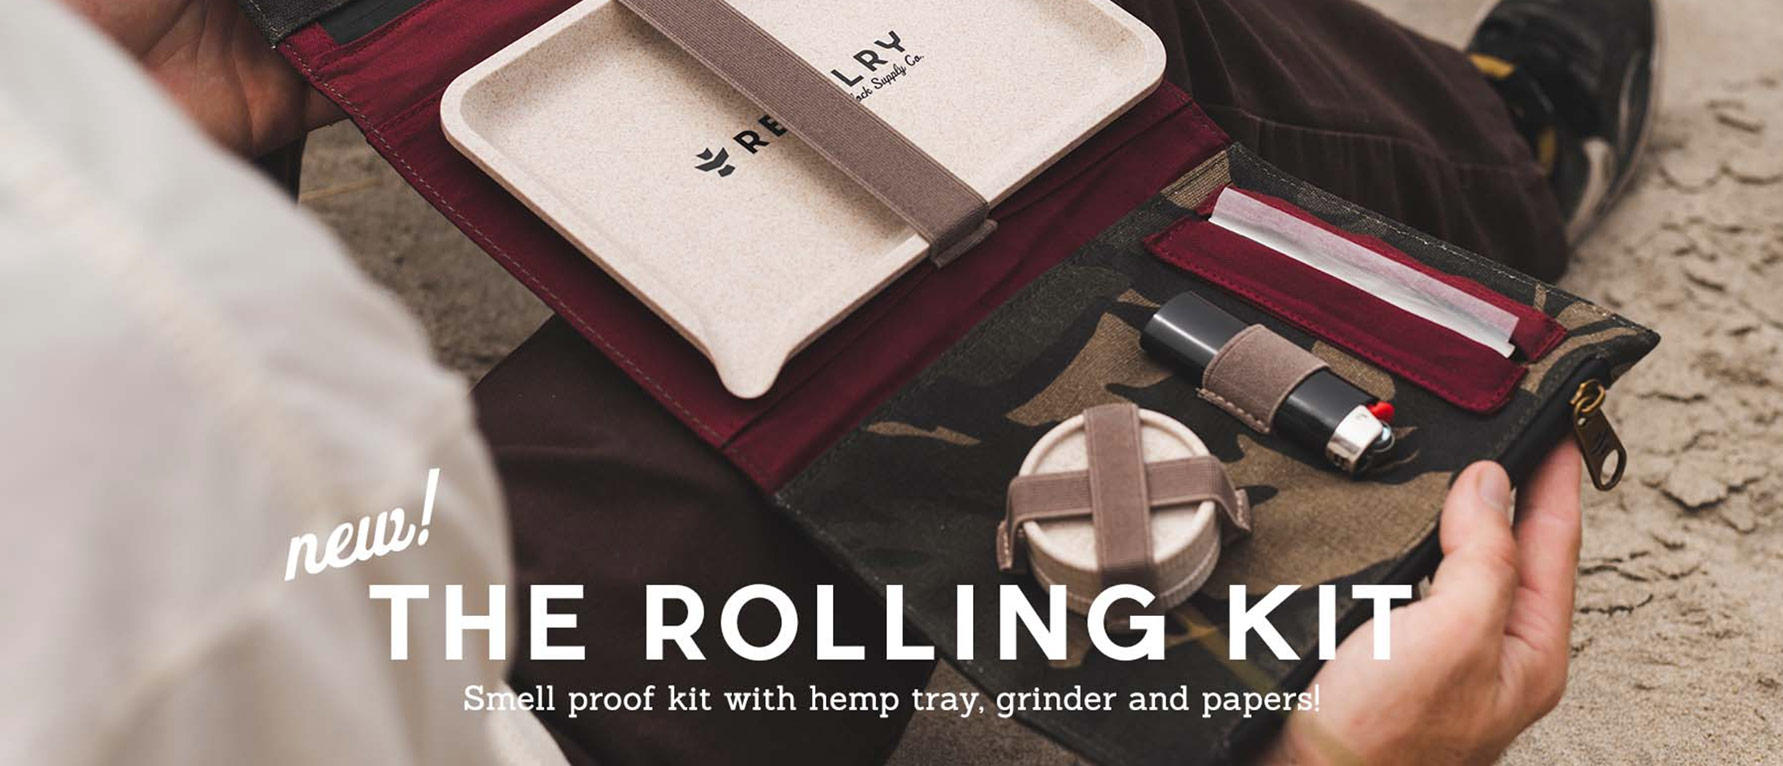 Revlry Rolling Kit